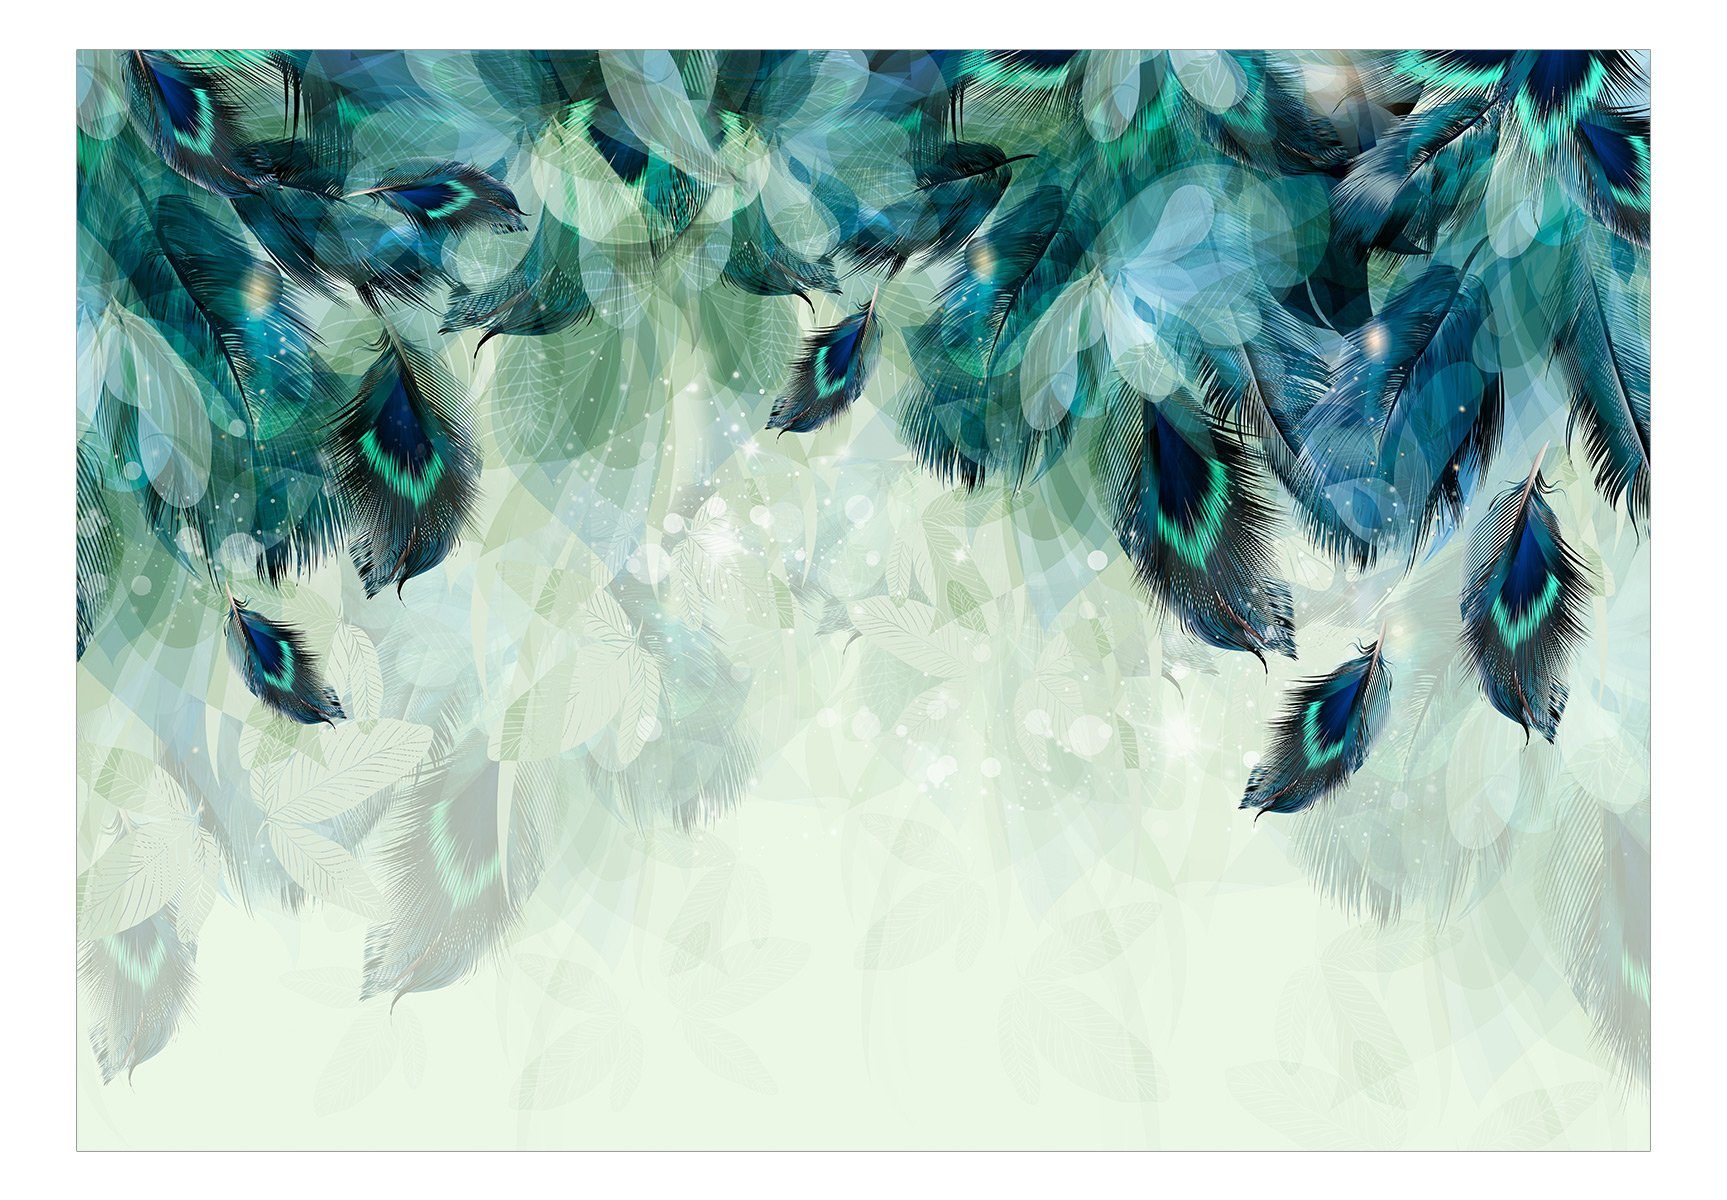 Vliestapete Feathers m, Emerald 0.98x0.7 matt, halb-matt, Tapete Design KUNSTLOFT lichtbeständige